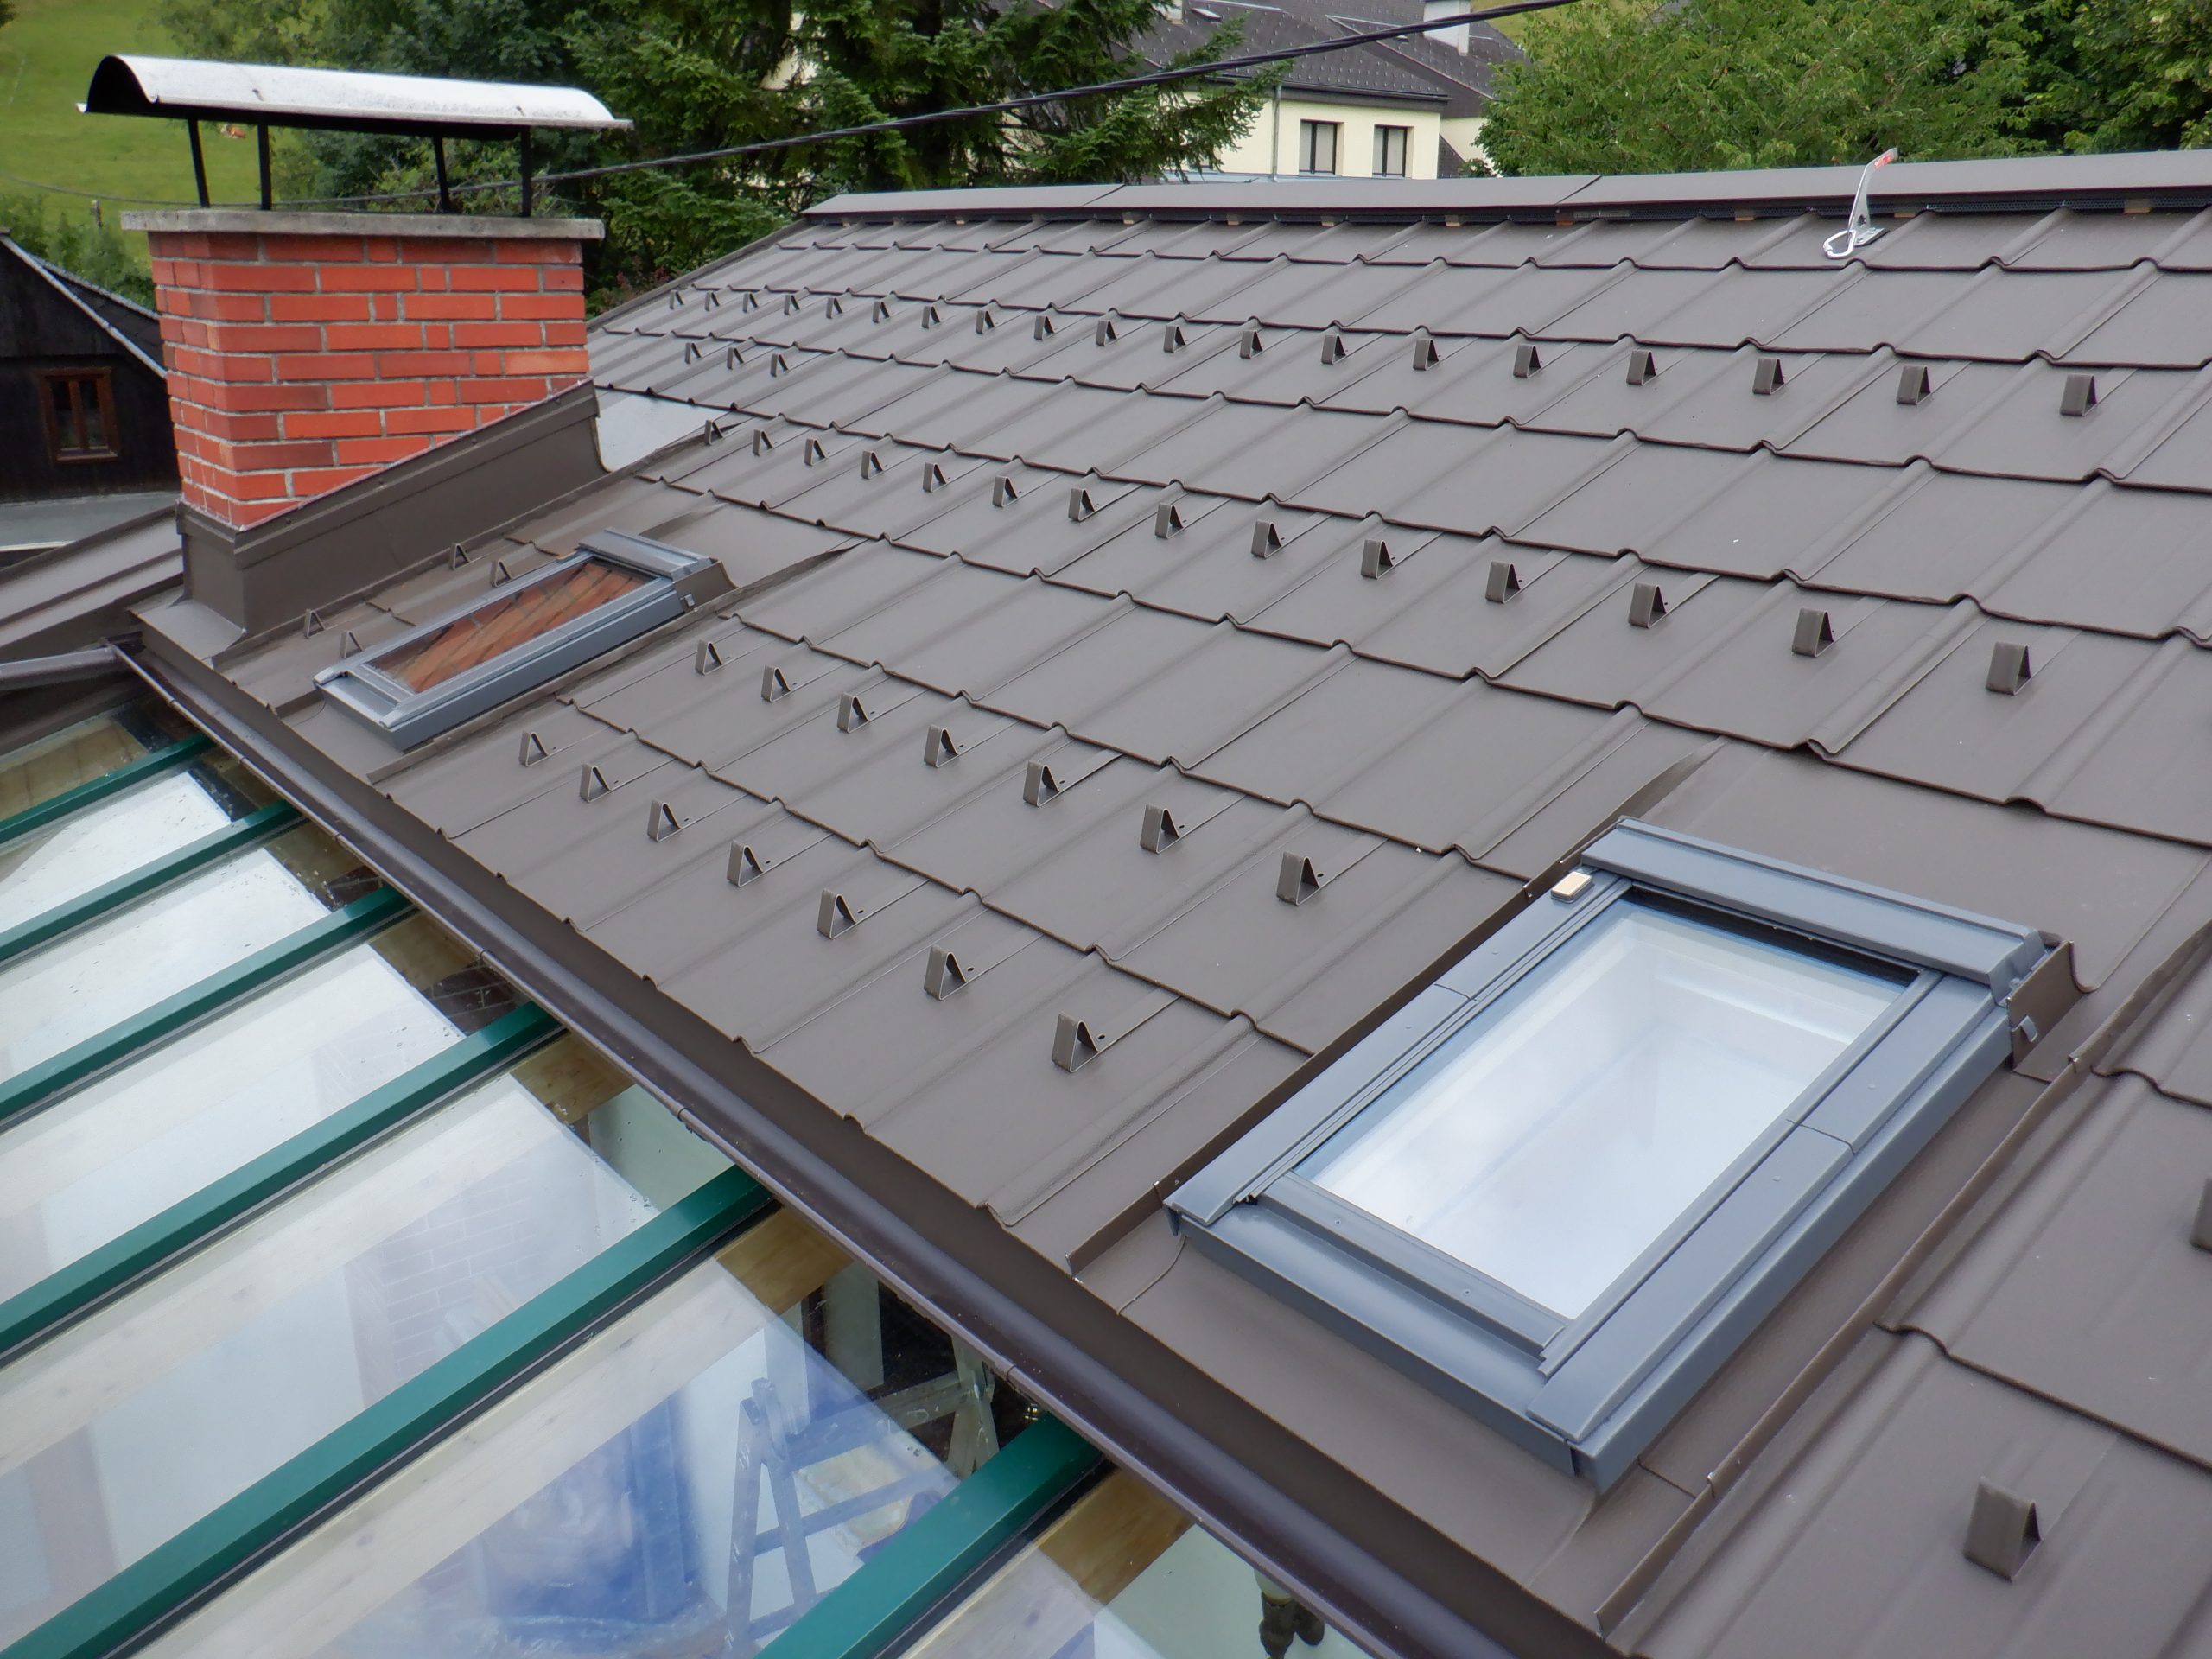 Prefa Dachplatten P10 Farbe Braun, Einbindung von Velux Dachflächenfenster sowie einer Kamineinfassung. Durchgehende Firstentlüftung.